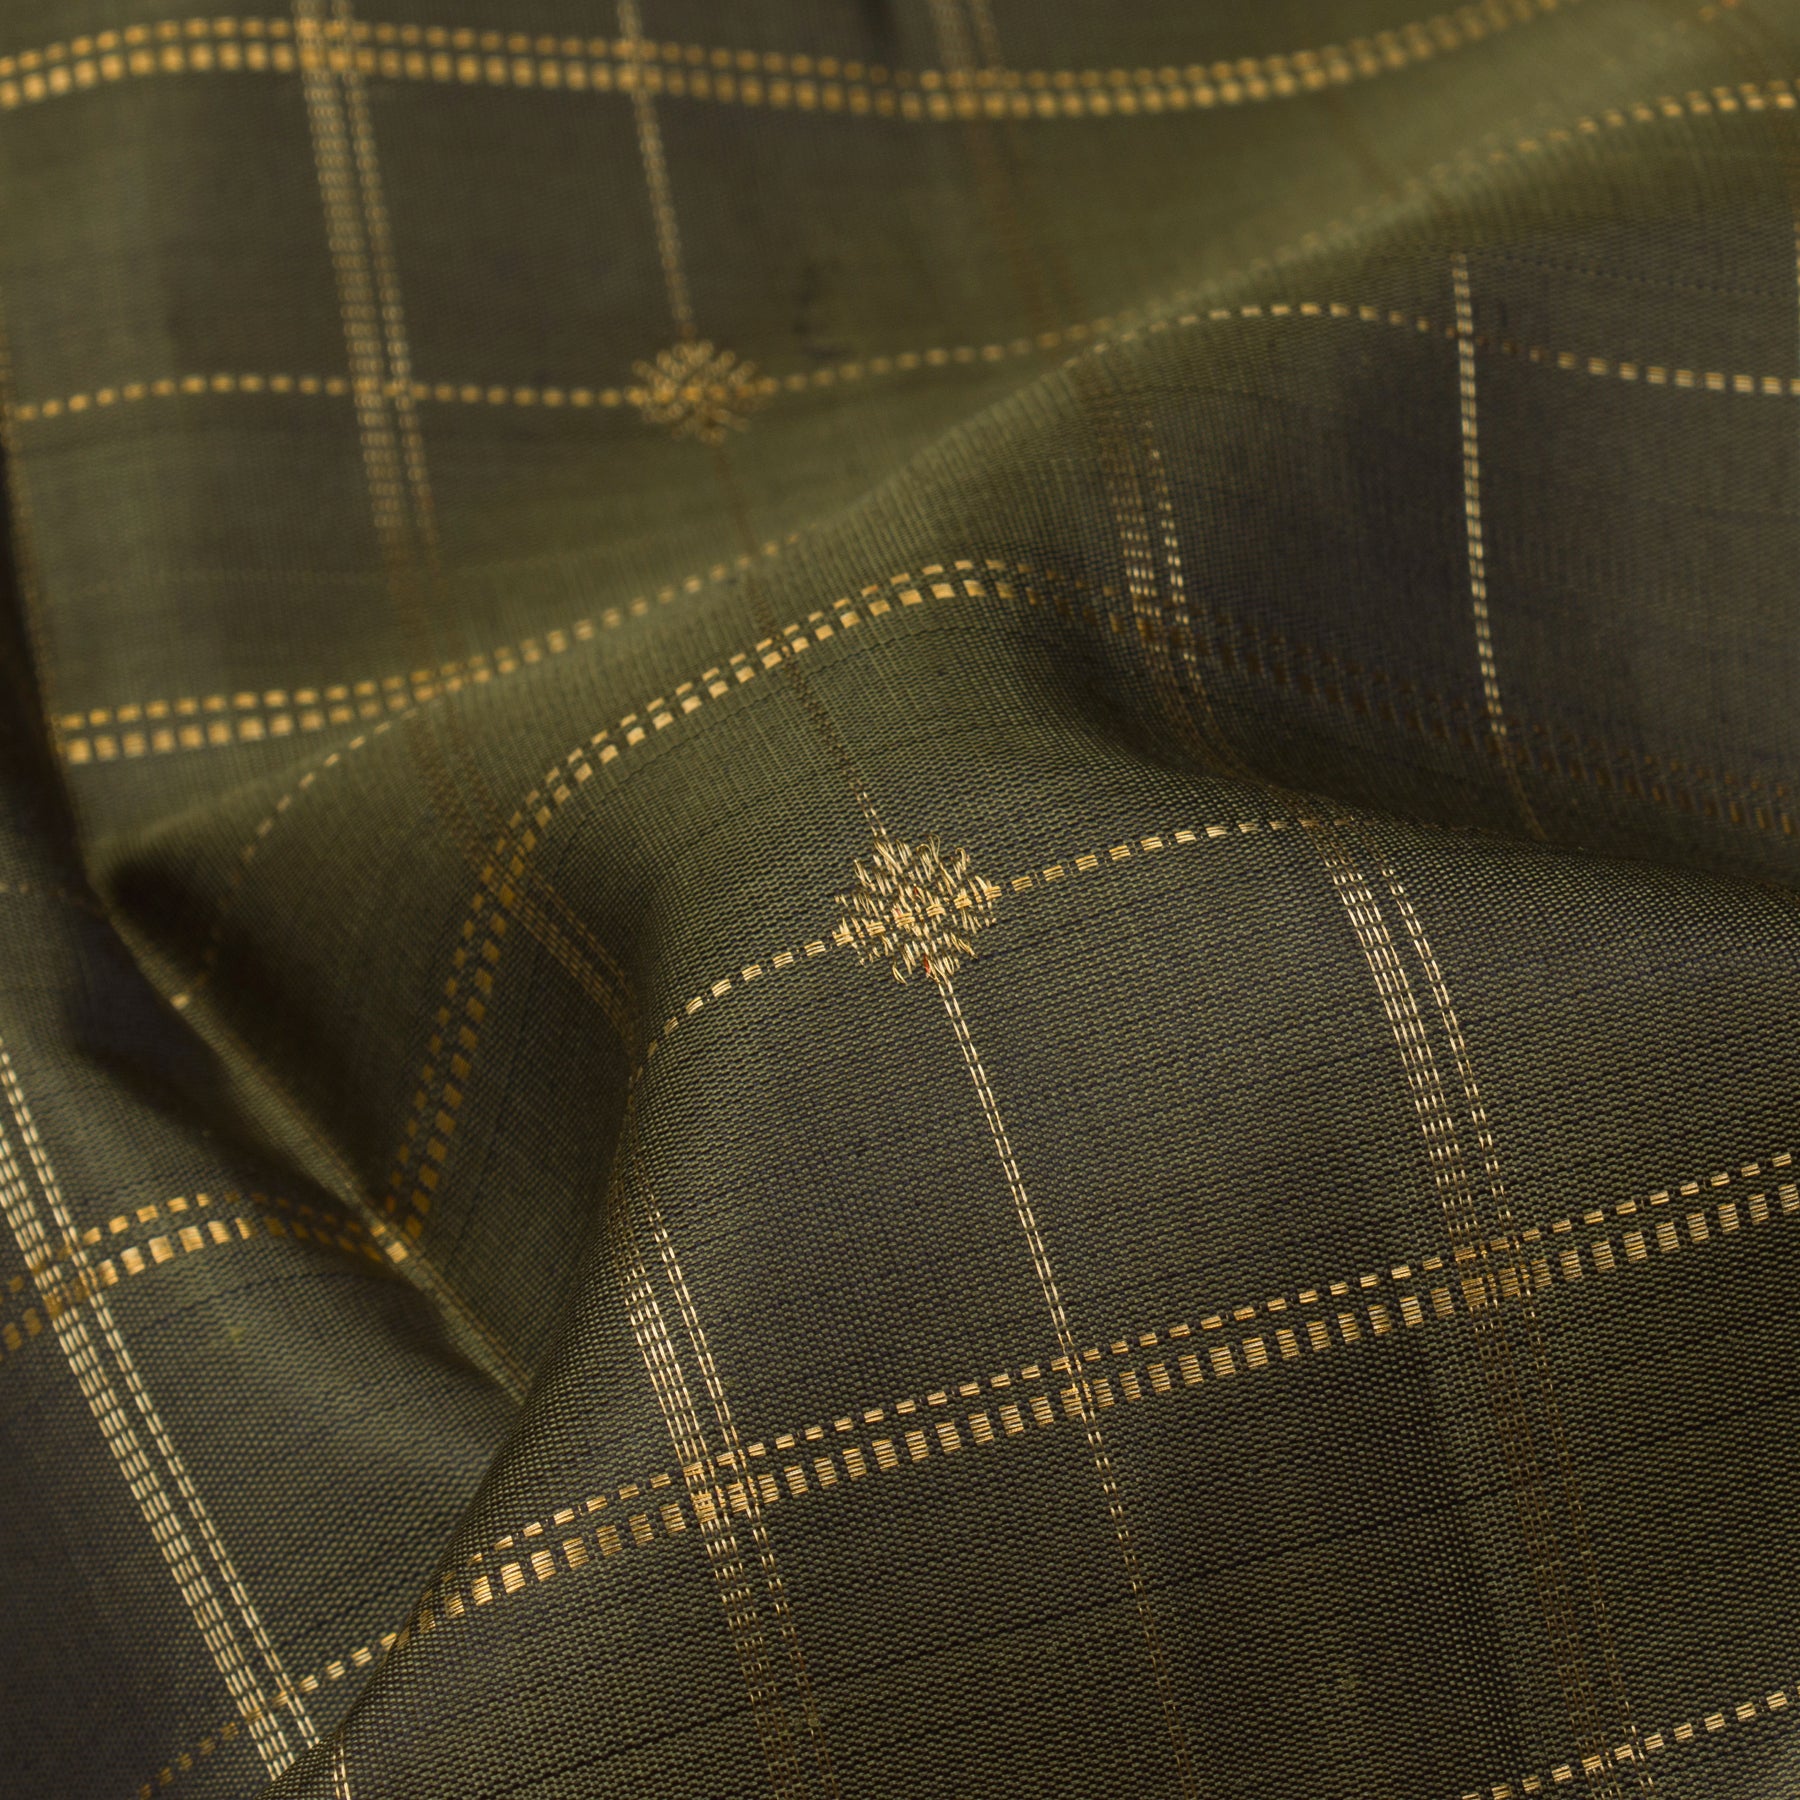 Kanakavalli Kanjivaram Silk Sari 23-599-HS001-12382 - Fabric View